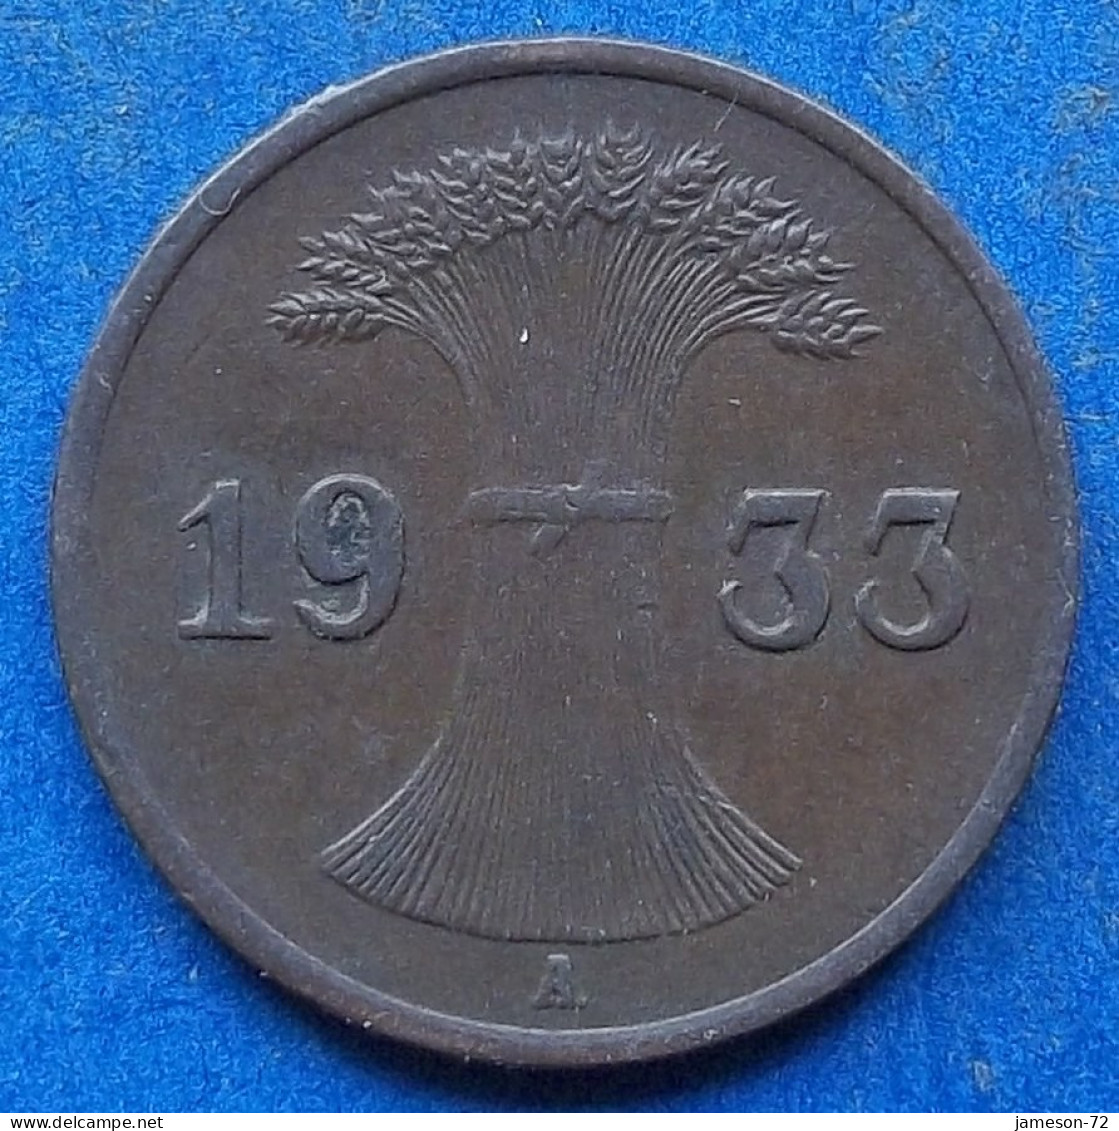 GERMANY - 1 Reichspfennig 1933 A KM# 37 Weimar Republic Reichsmark Coinage (1924-1938) - Edelweiss Coins - 1 Renten- & 1 Reichspfennig